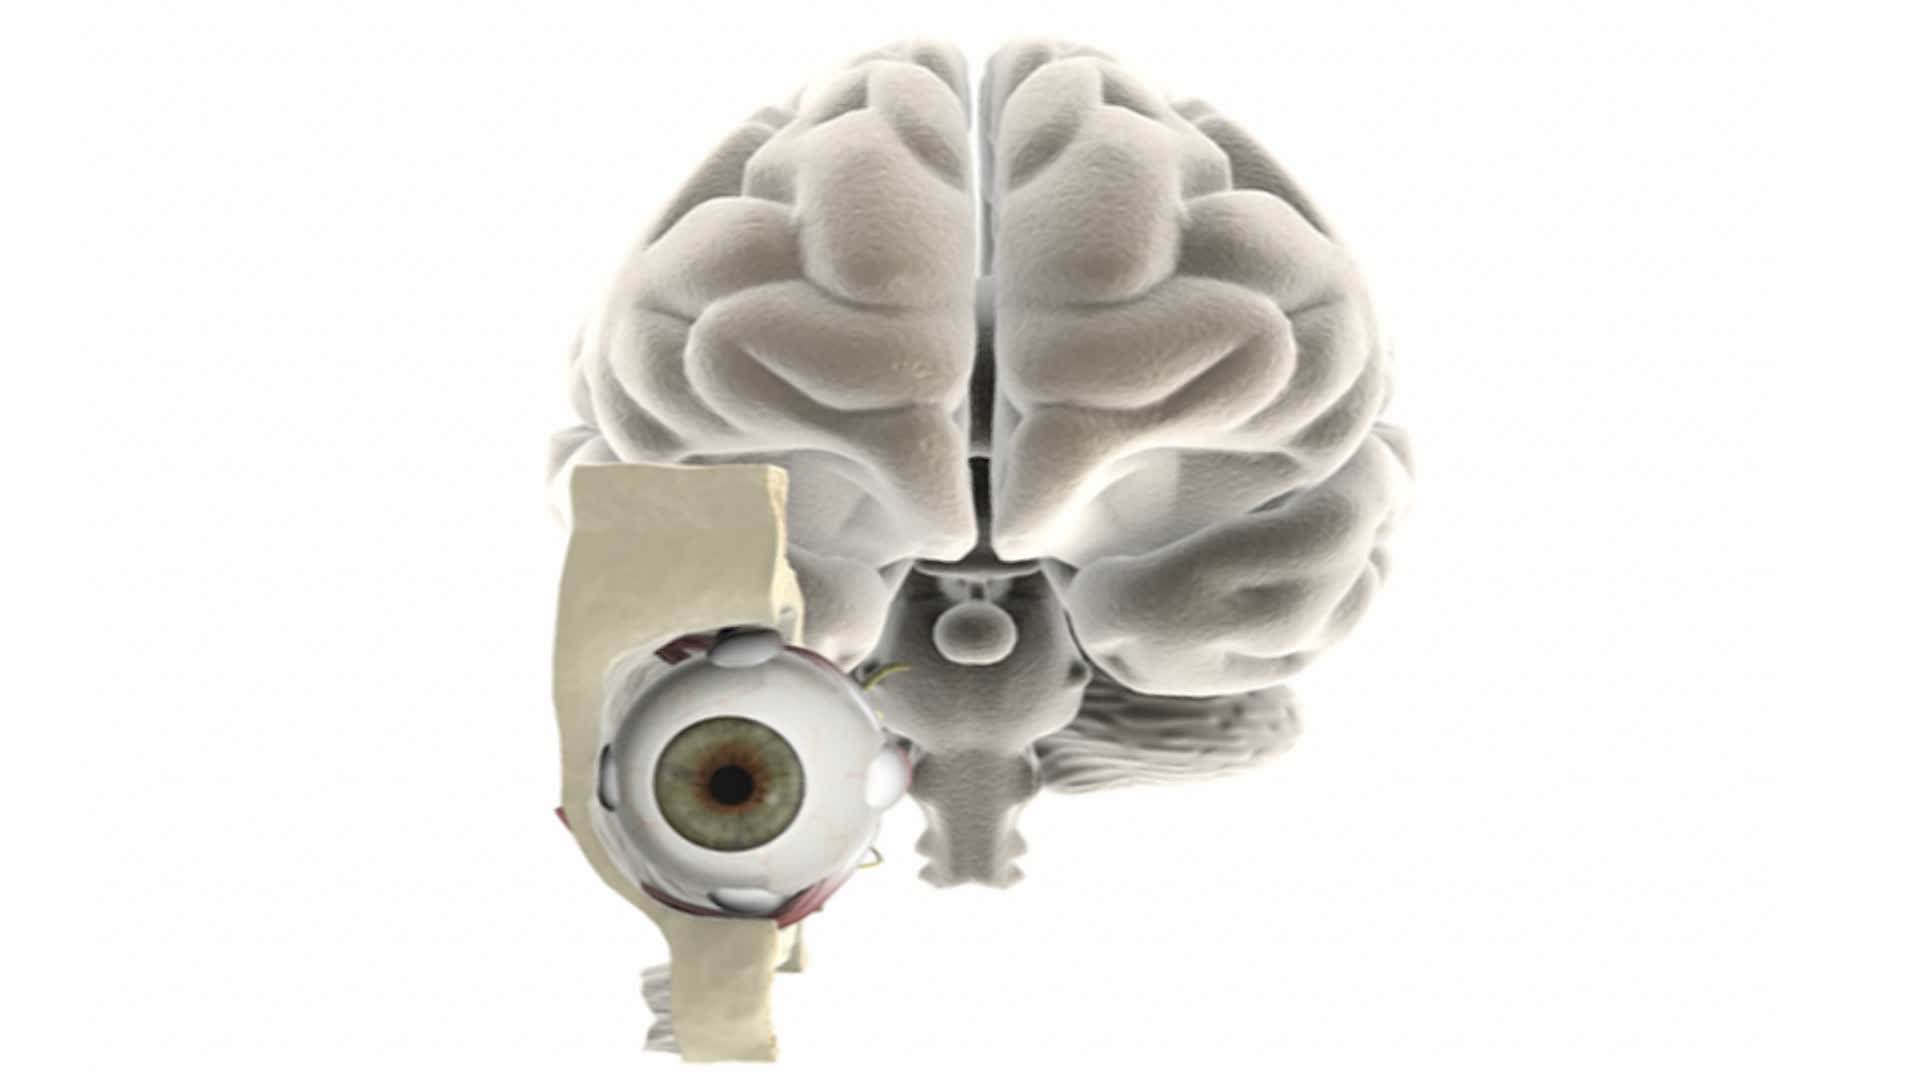 动画描绘眼睛在原位与切成圆角的头骨和大脑。随着镜头的放大，大脑逐渐消失，并集中在剖开的眼睛的解剖结构上。标签是用来区别的视频下载